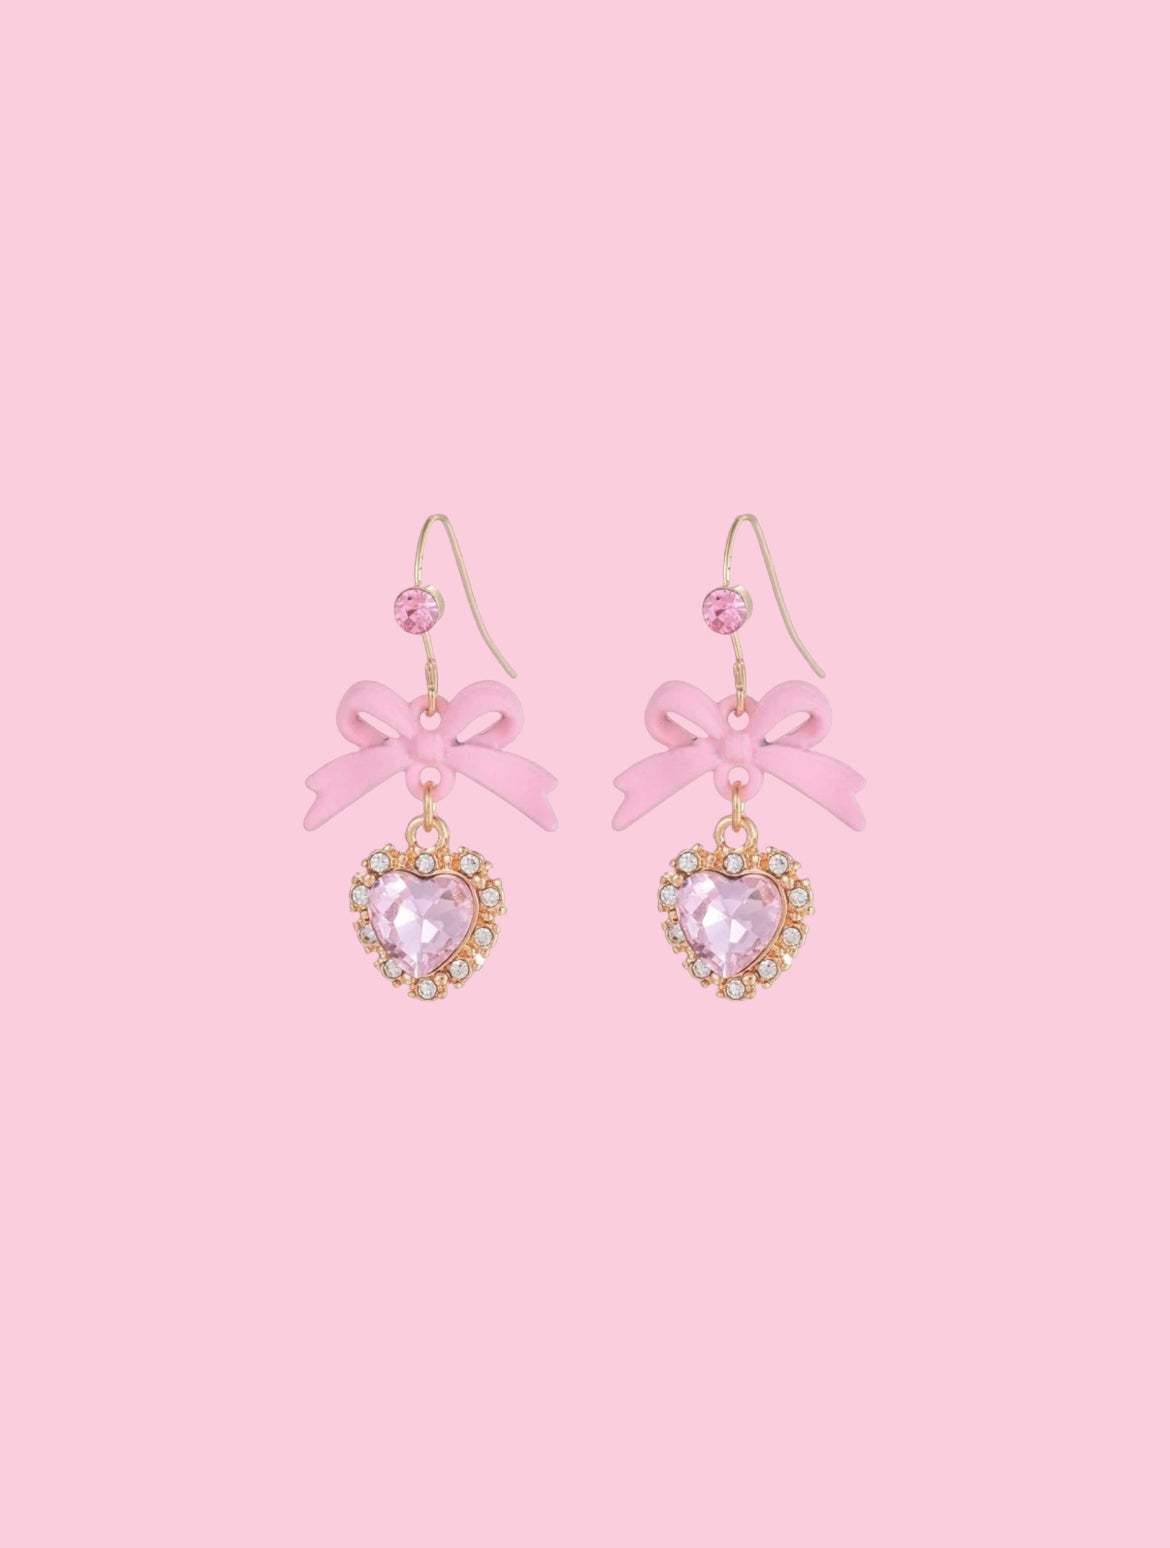 Pink Sweetheart drop earrings. Barbiecore earrings for women.